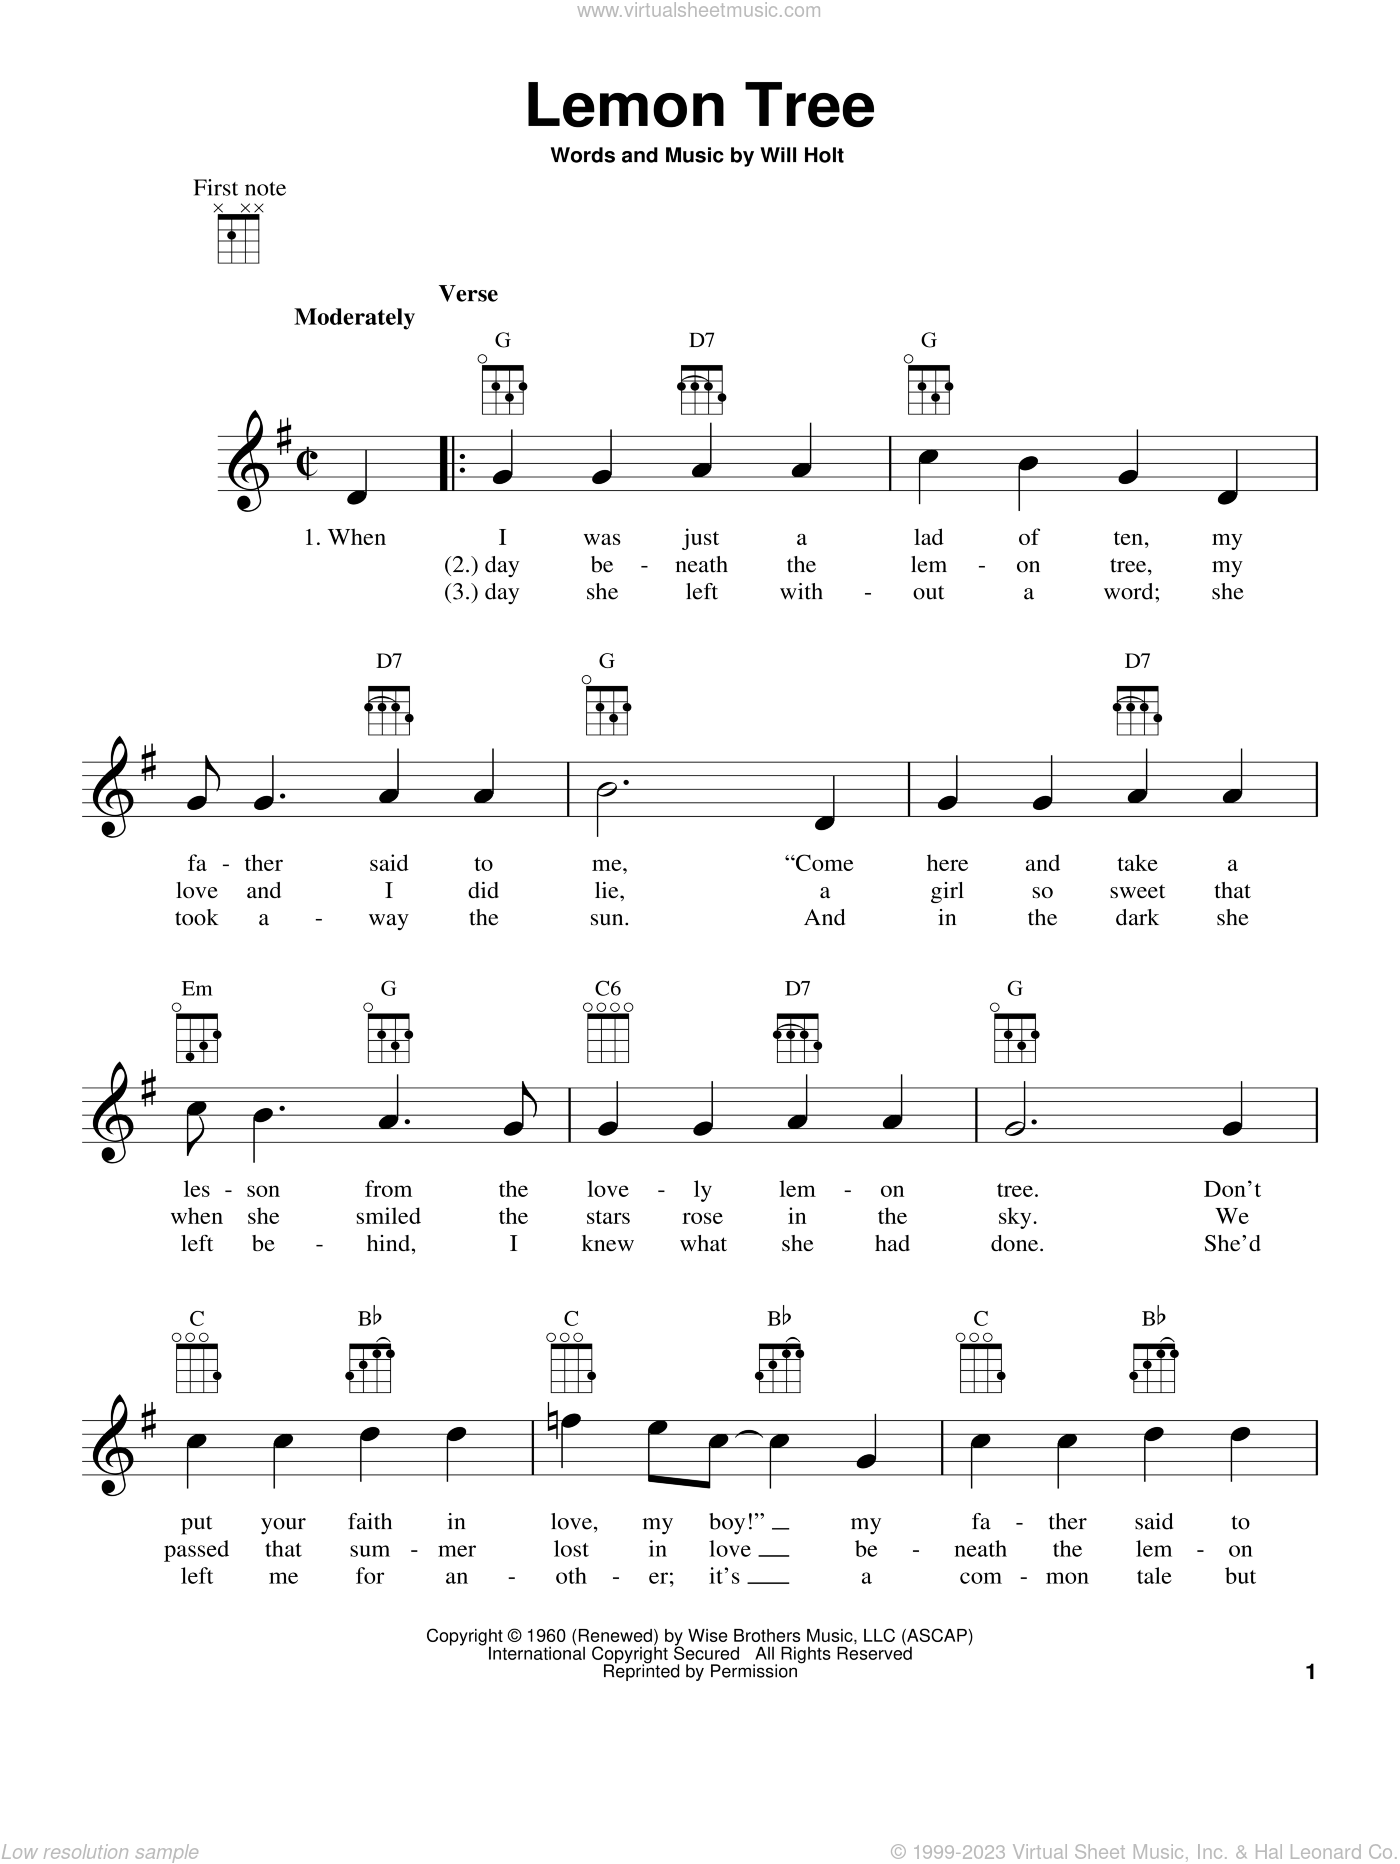 Mary Lemon Tree sheet music for ukulele [PDF]